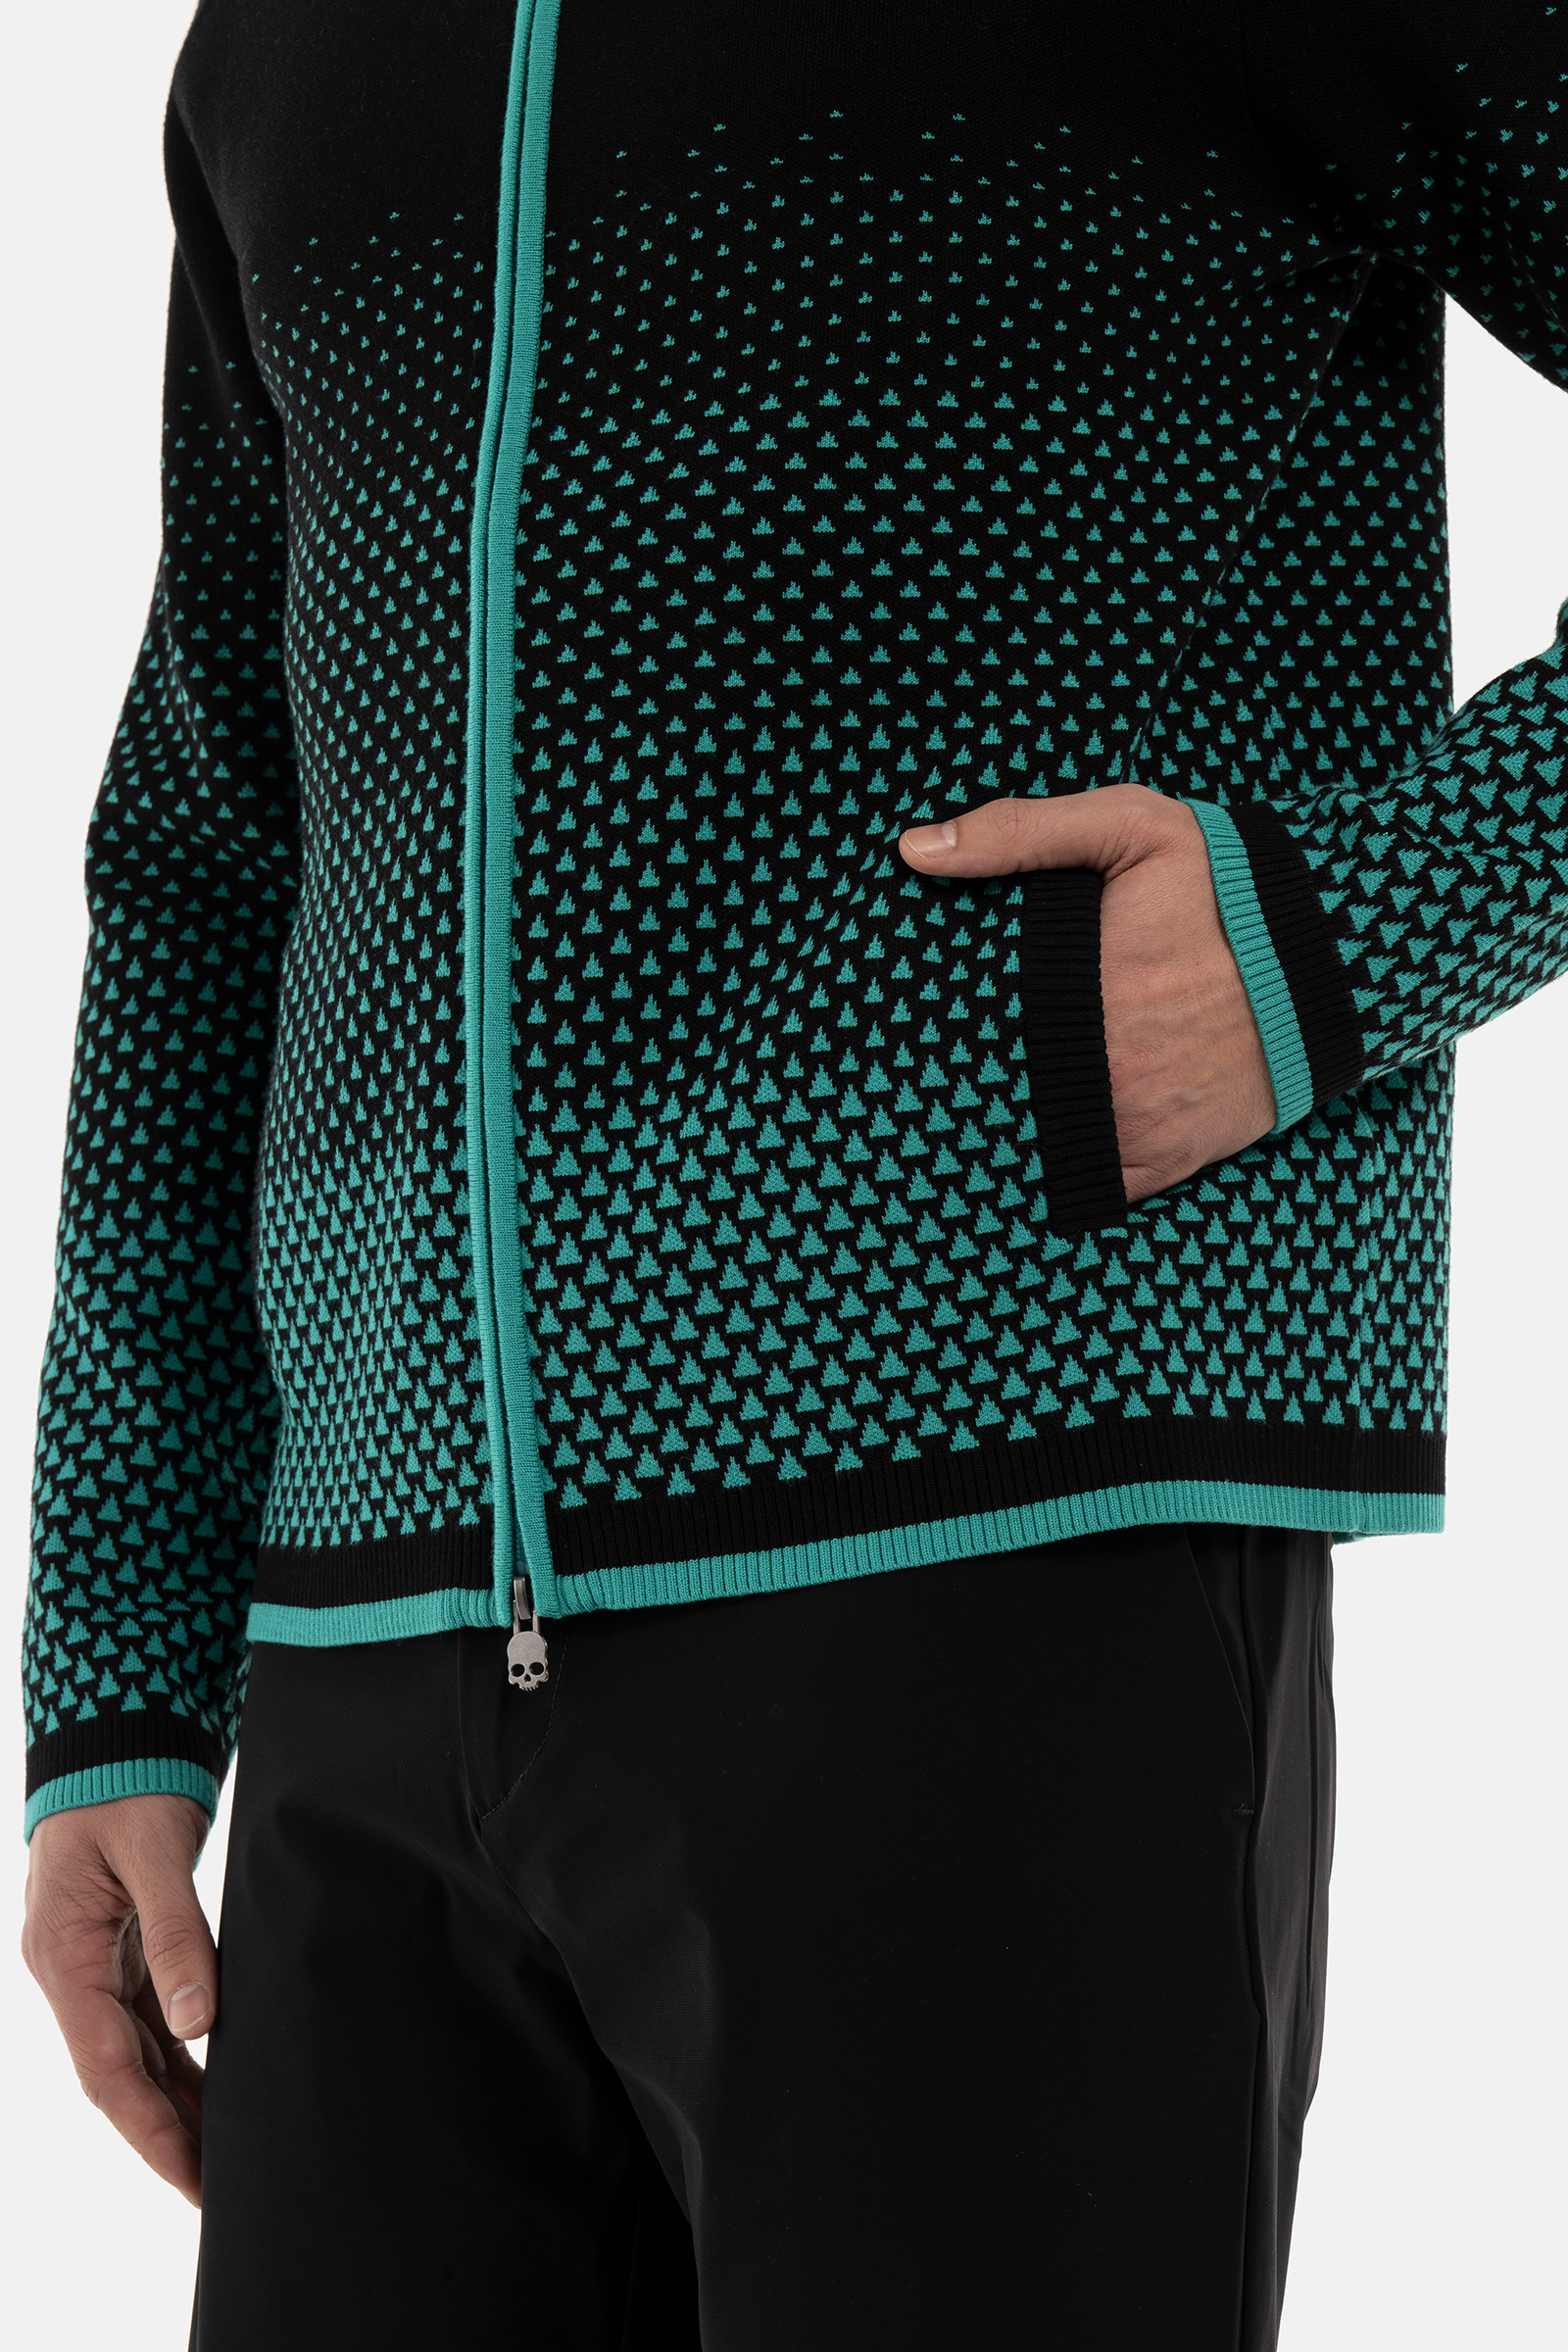 GEOMETRIC DEGRADE’ FZ KNITTED - BLACK,GREEN - Hydrogen - Luxury Sportwear